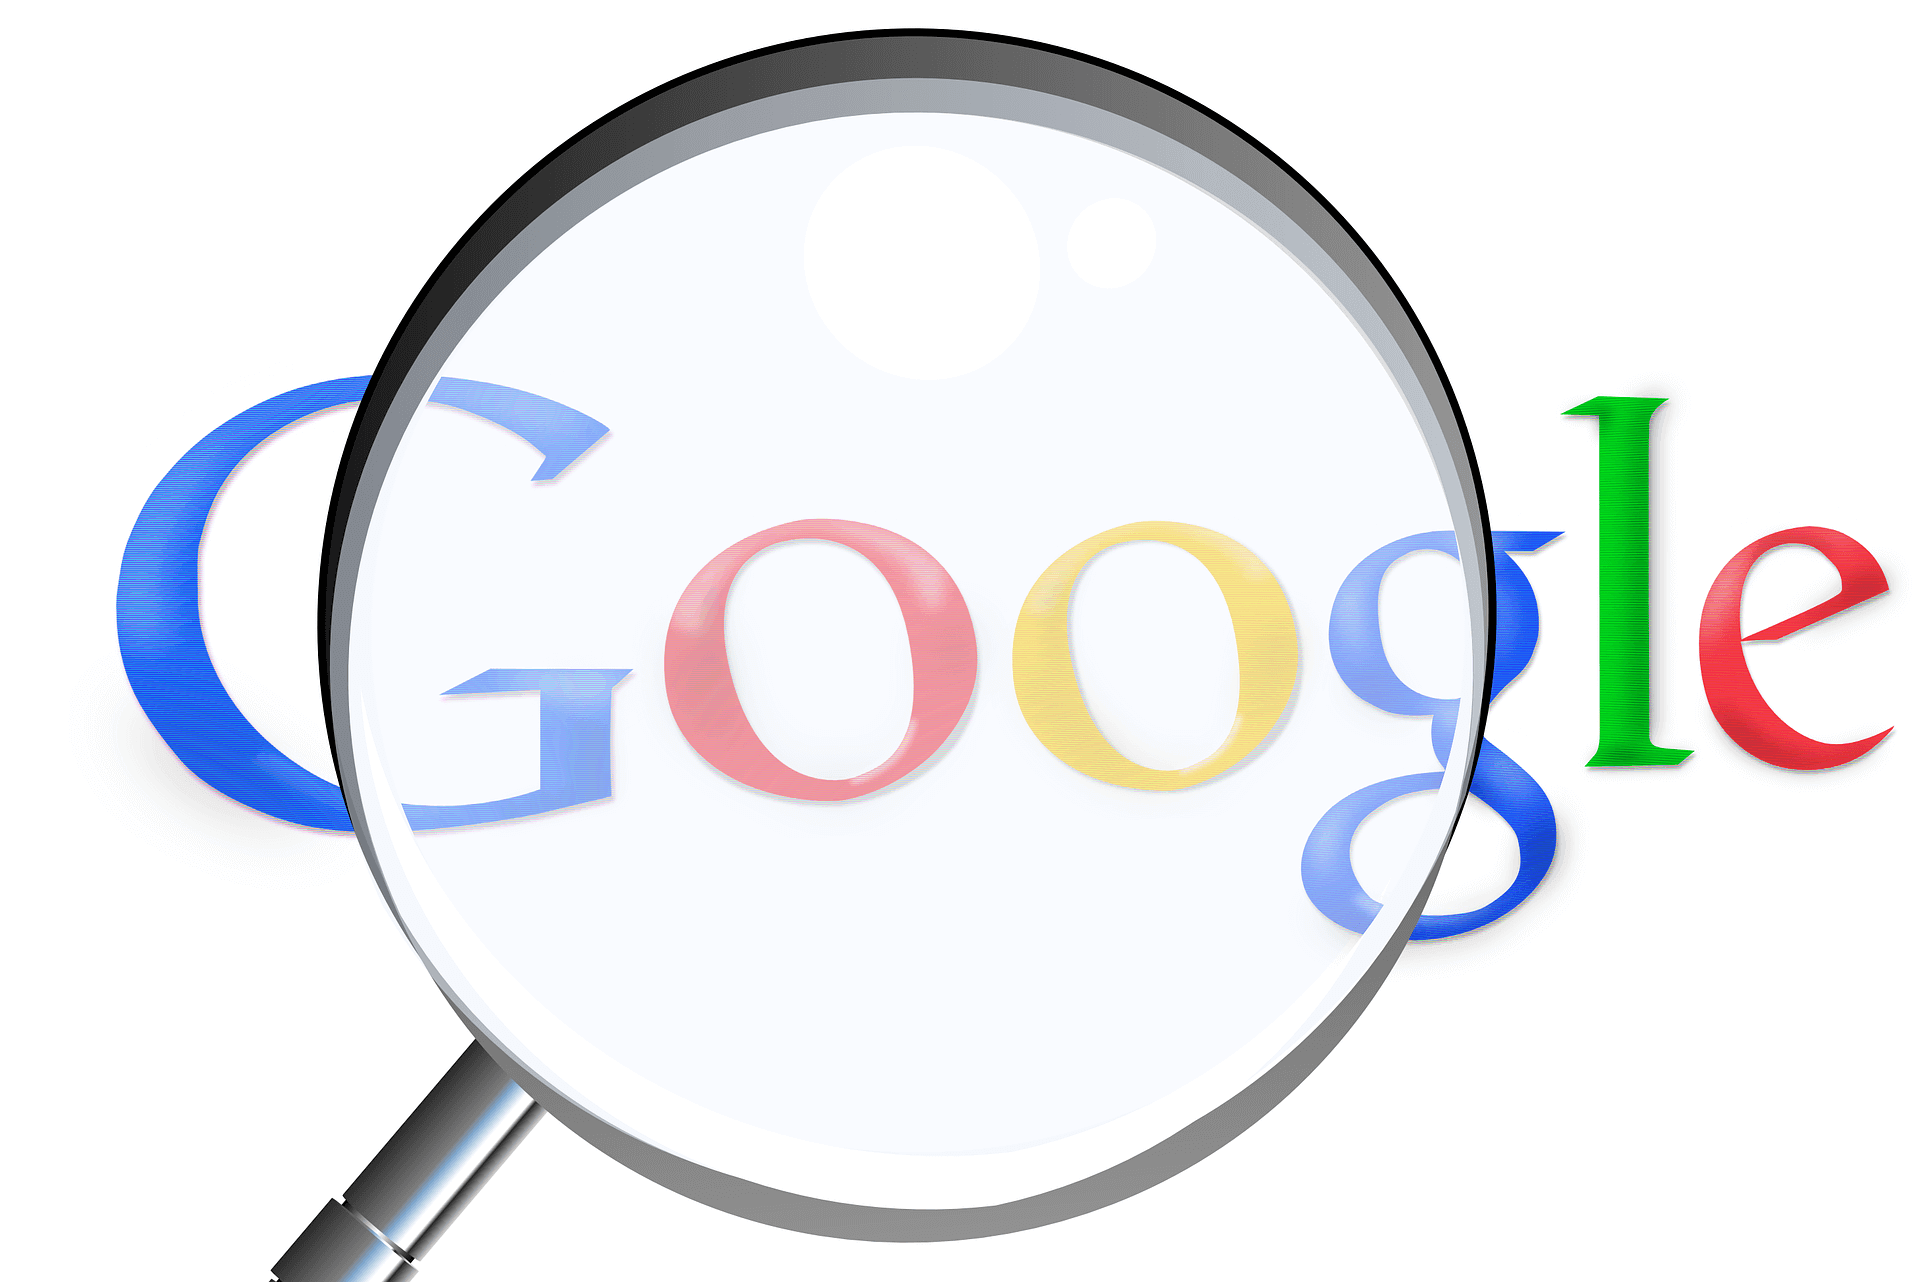 Le estensioni Google Chrome: strumenti facili da installare e usare